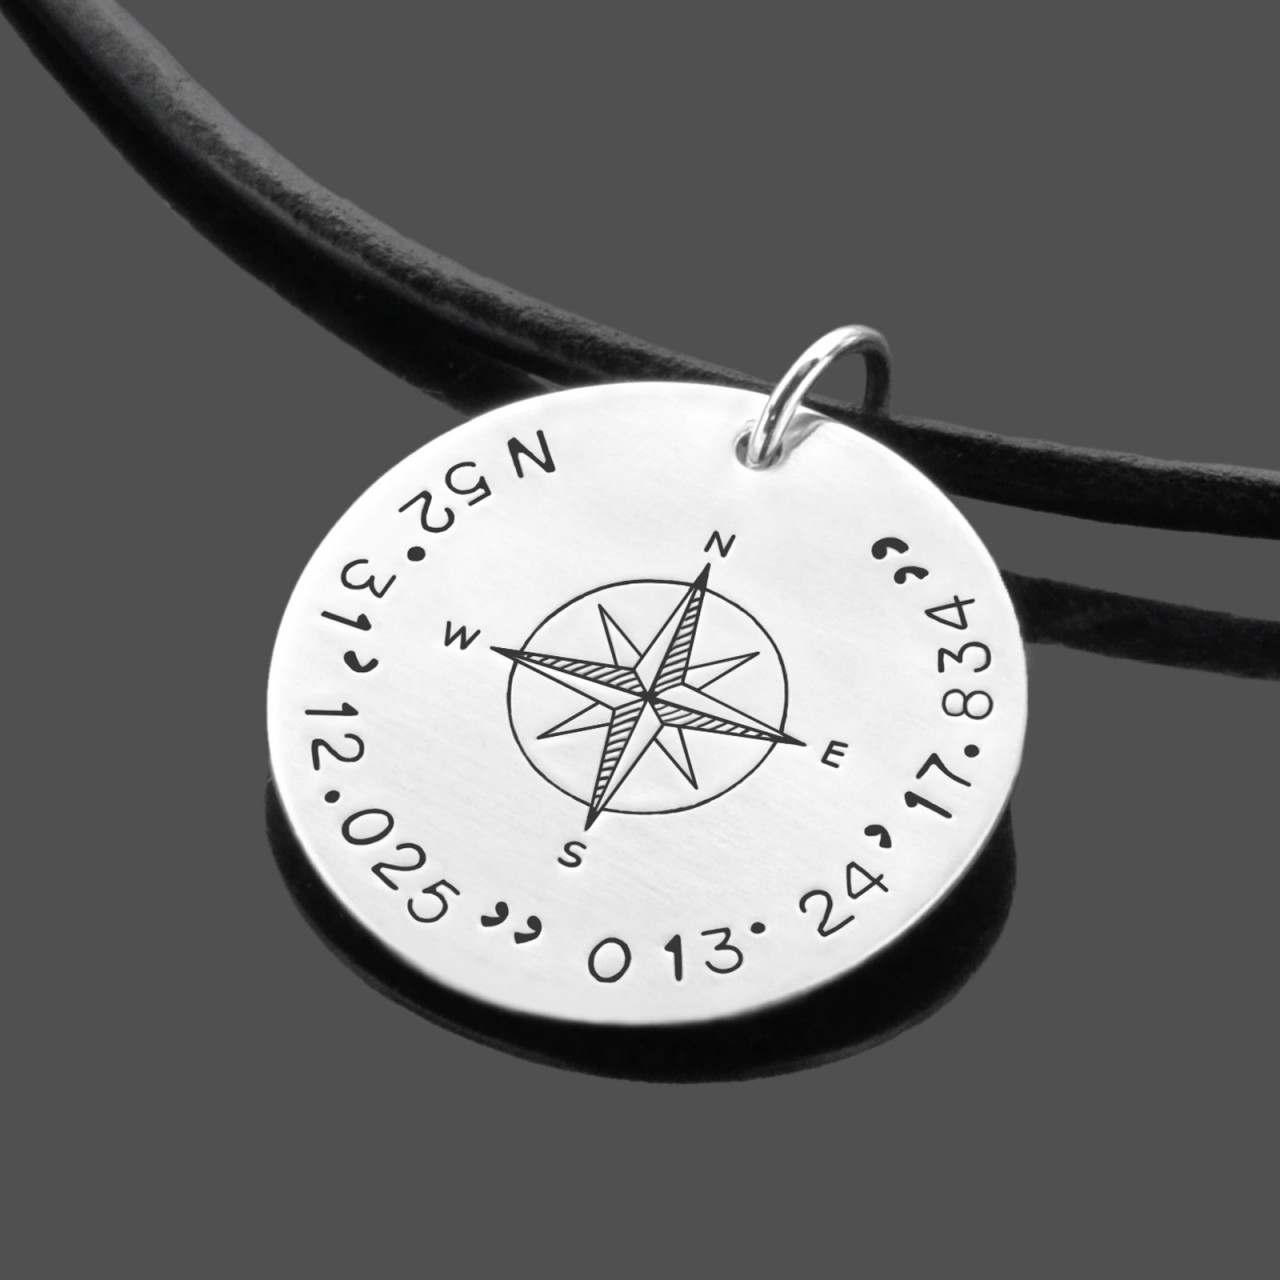 Herrenkette mit Koordinaten und Kompass aus Leder und Silber